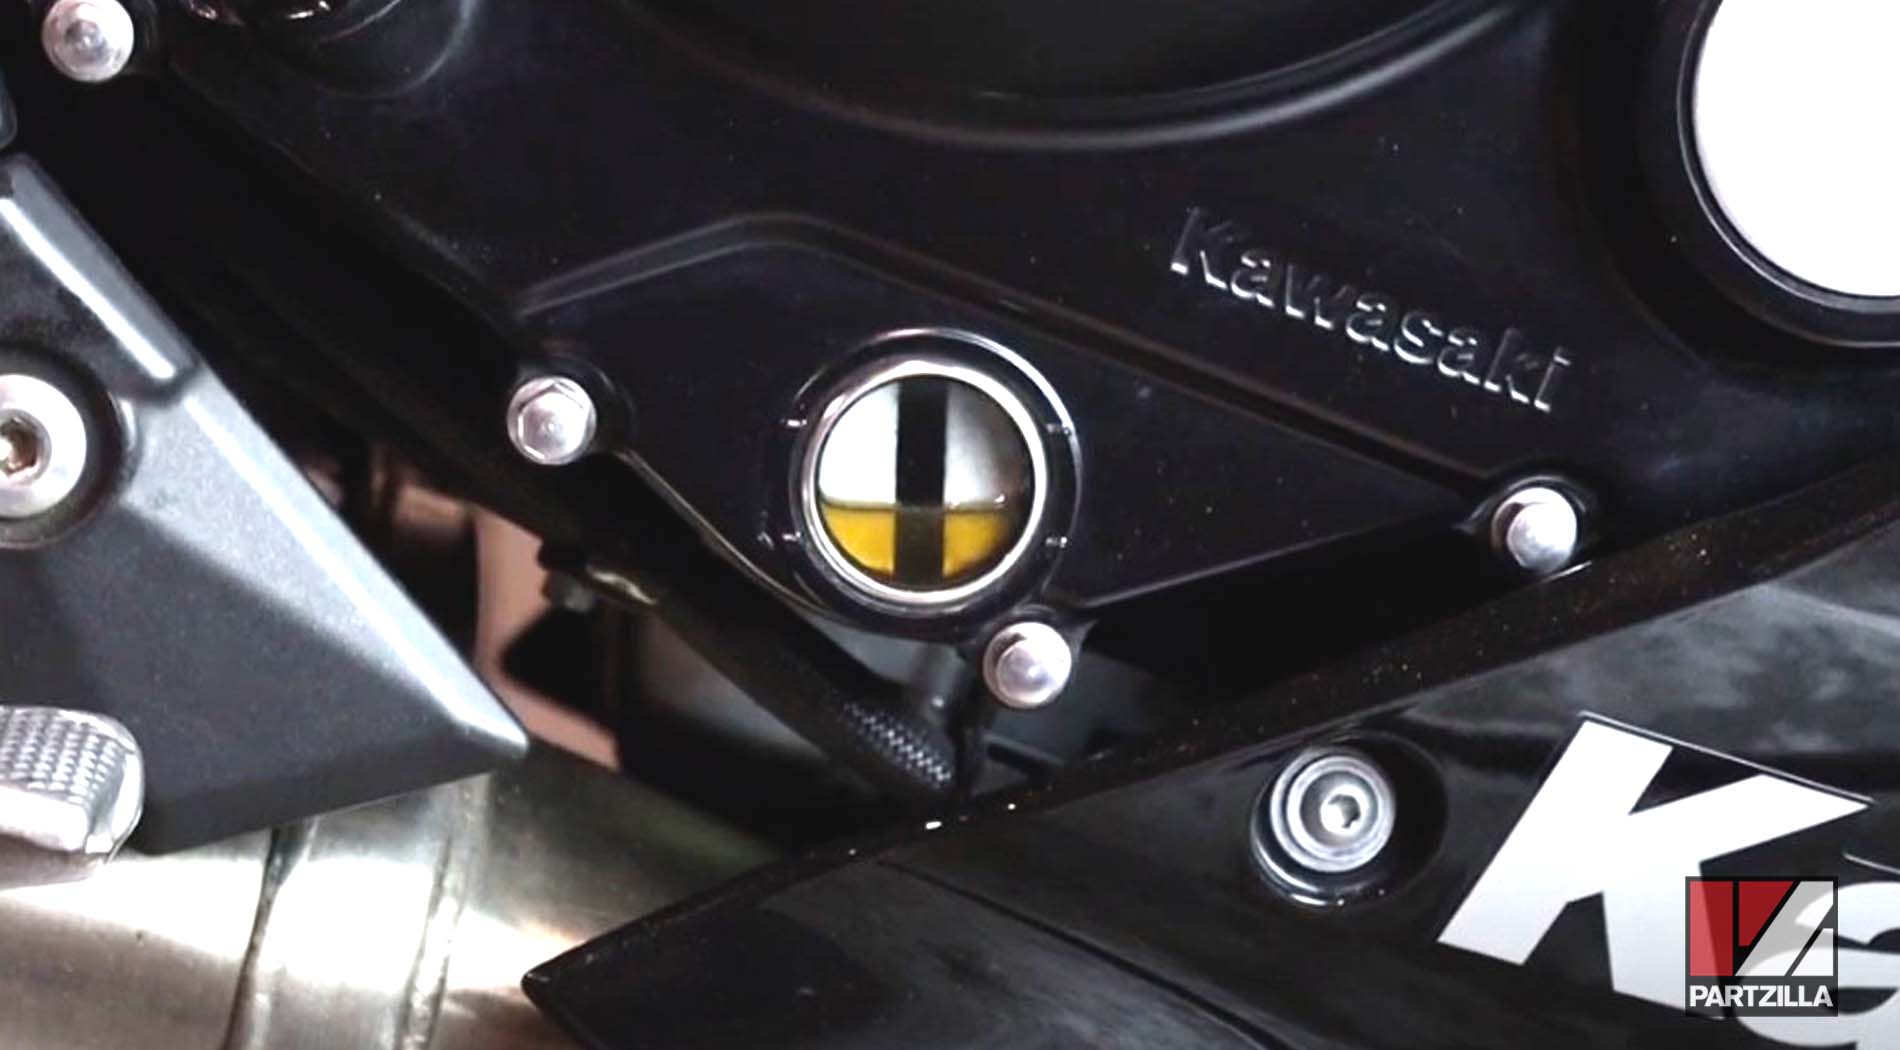 Kawasaki Ninja EX650 engine oil change